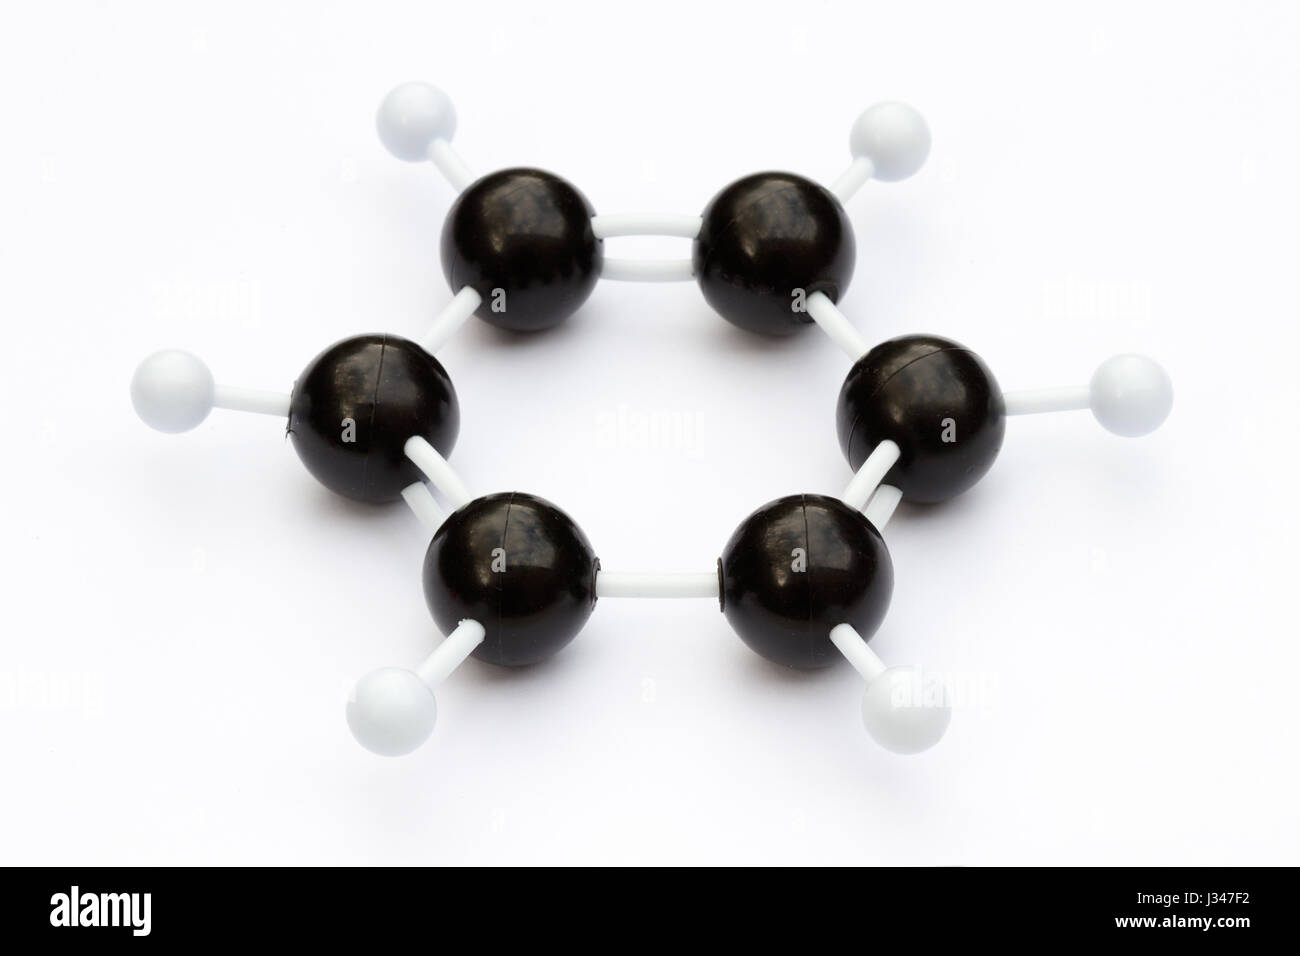 Kugel-und-Peitsche-Plastikmodell eines Moleküls Benzol (C6H6) auf einem weißen Hintergrund. Das Molekül ist mit Kekule Struktur dargestellt. Stockfoto